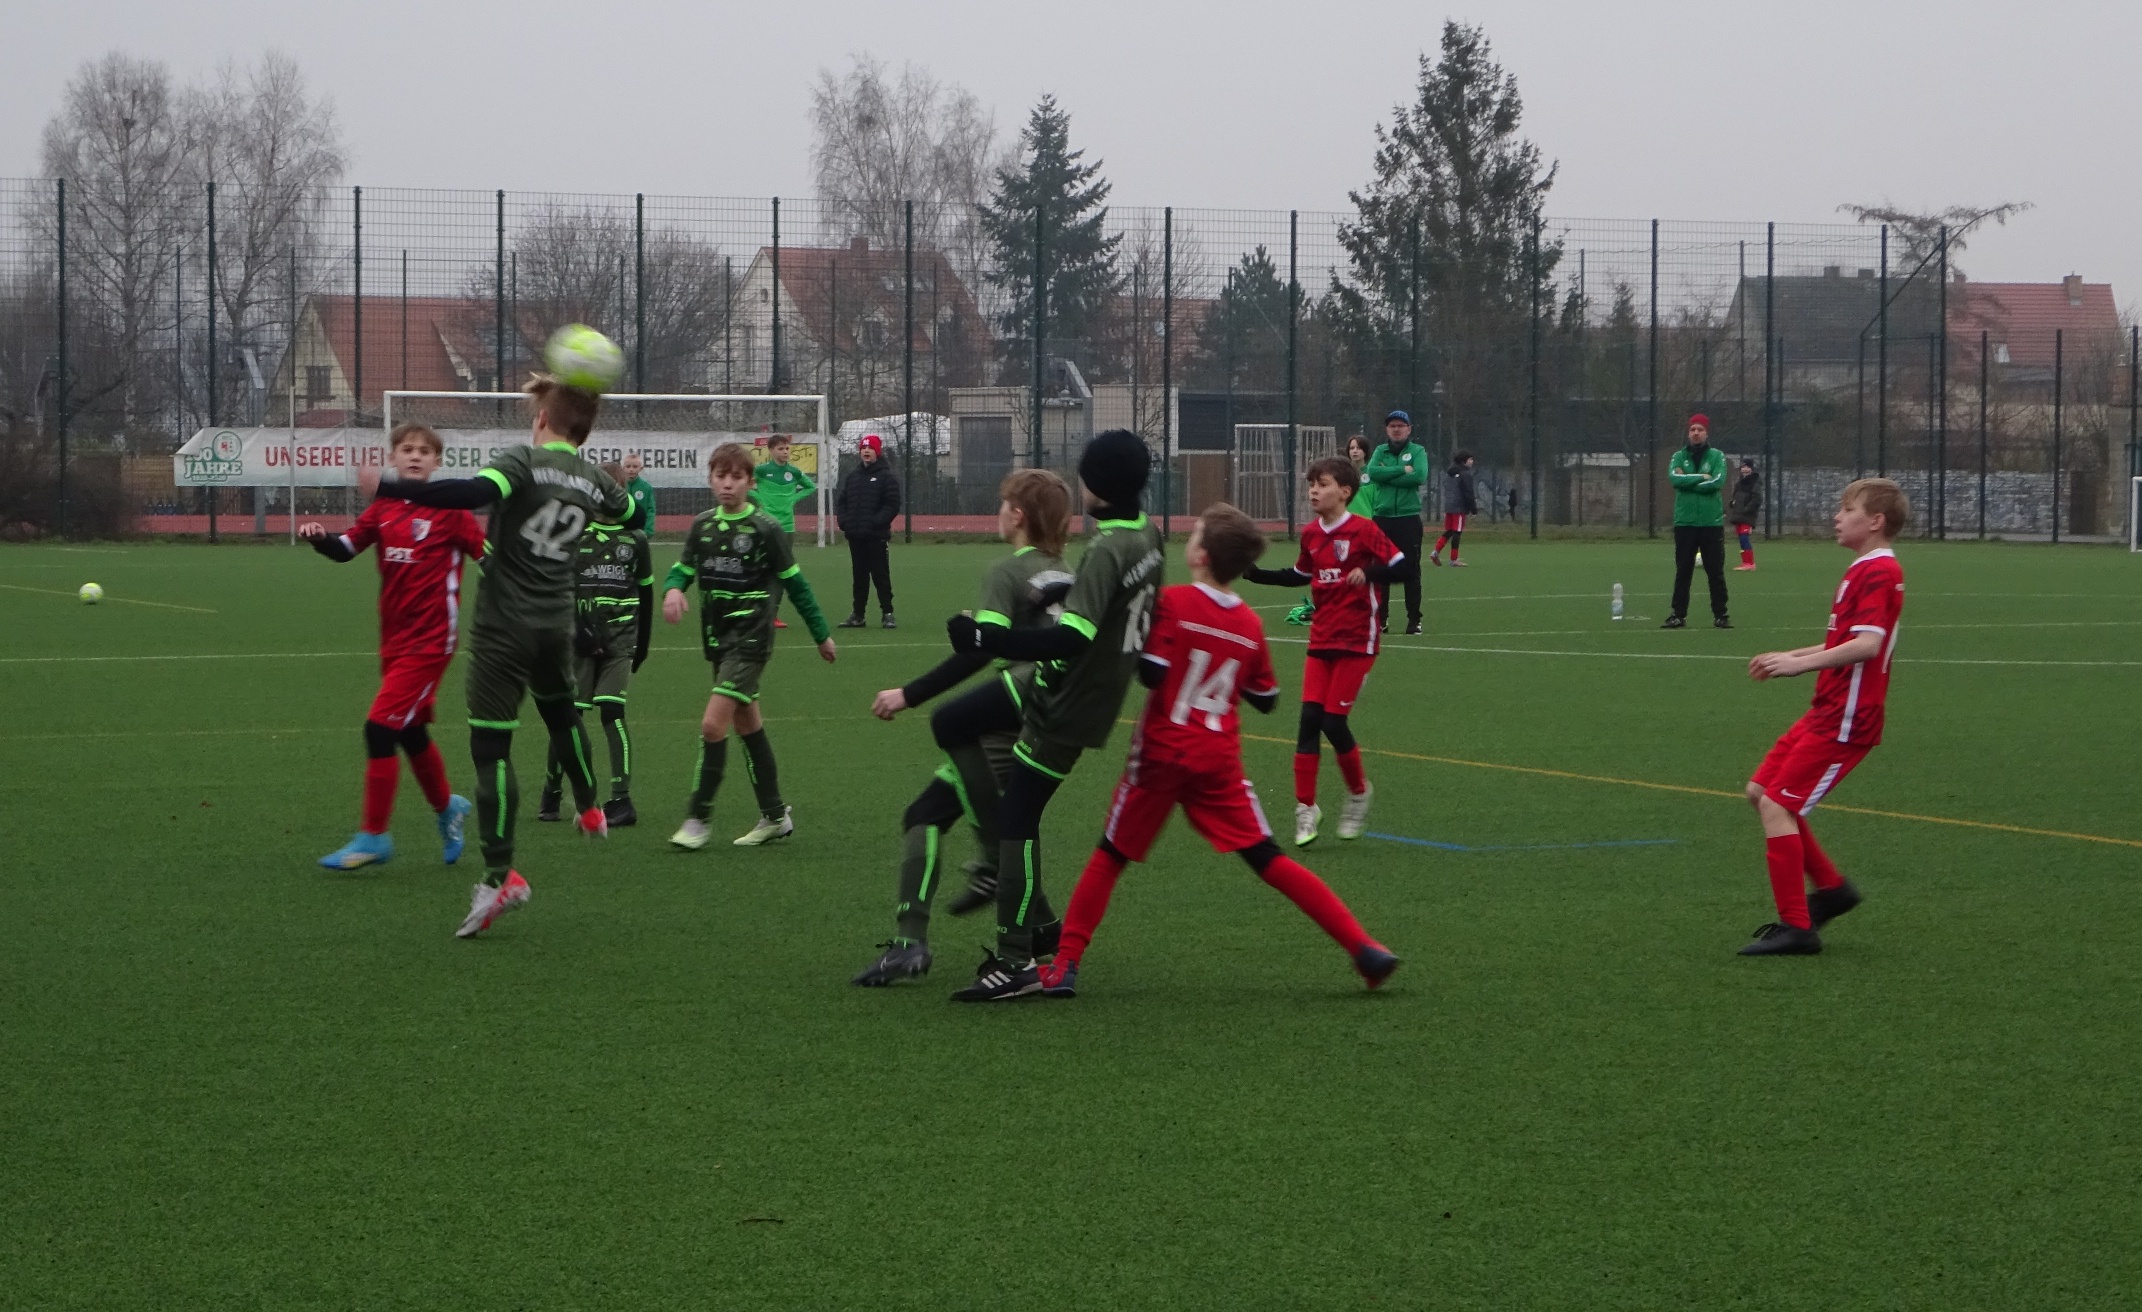 D2-Junioren begeistern in Werder